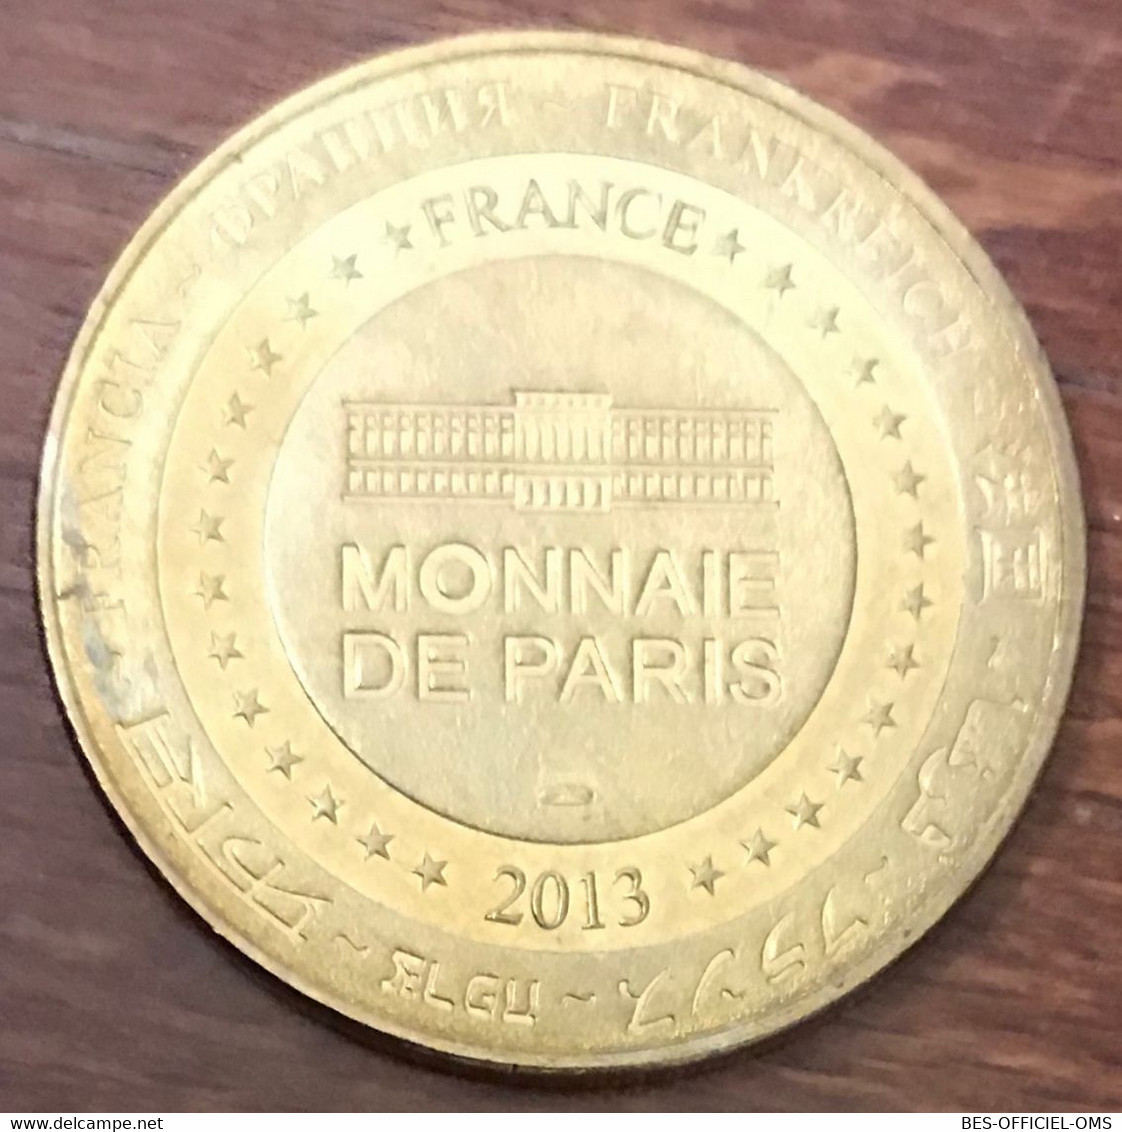 34 SAINT JEAN DE FOS GROTTE DE CLAMOUSE MDP 2013 MÉDAILLE MONNAIE DE PARIS JETON TOURISTIQUE TOKENS MEDALS COINS - 2013